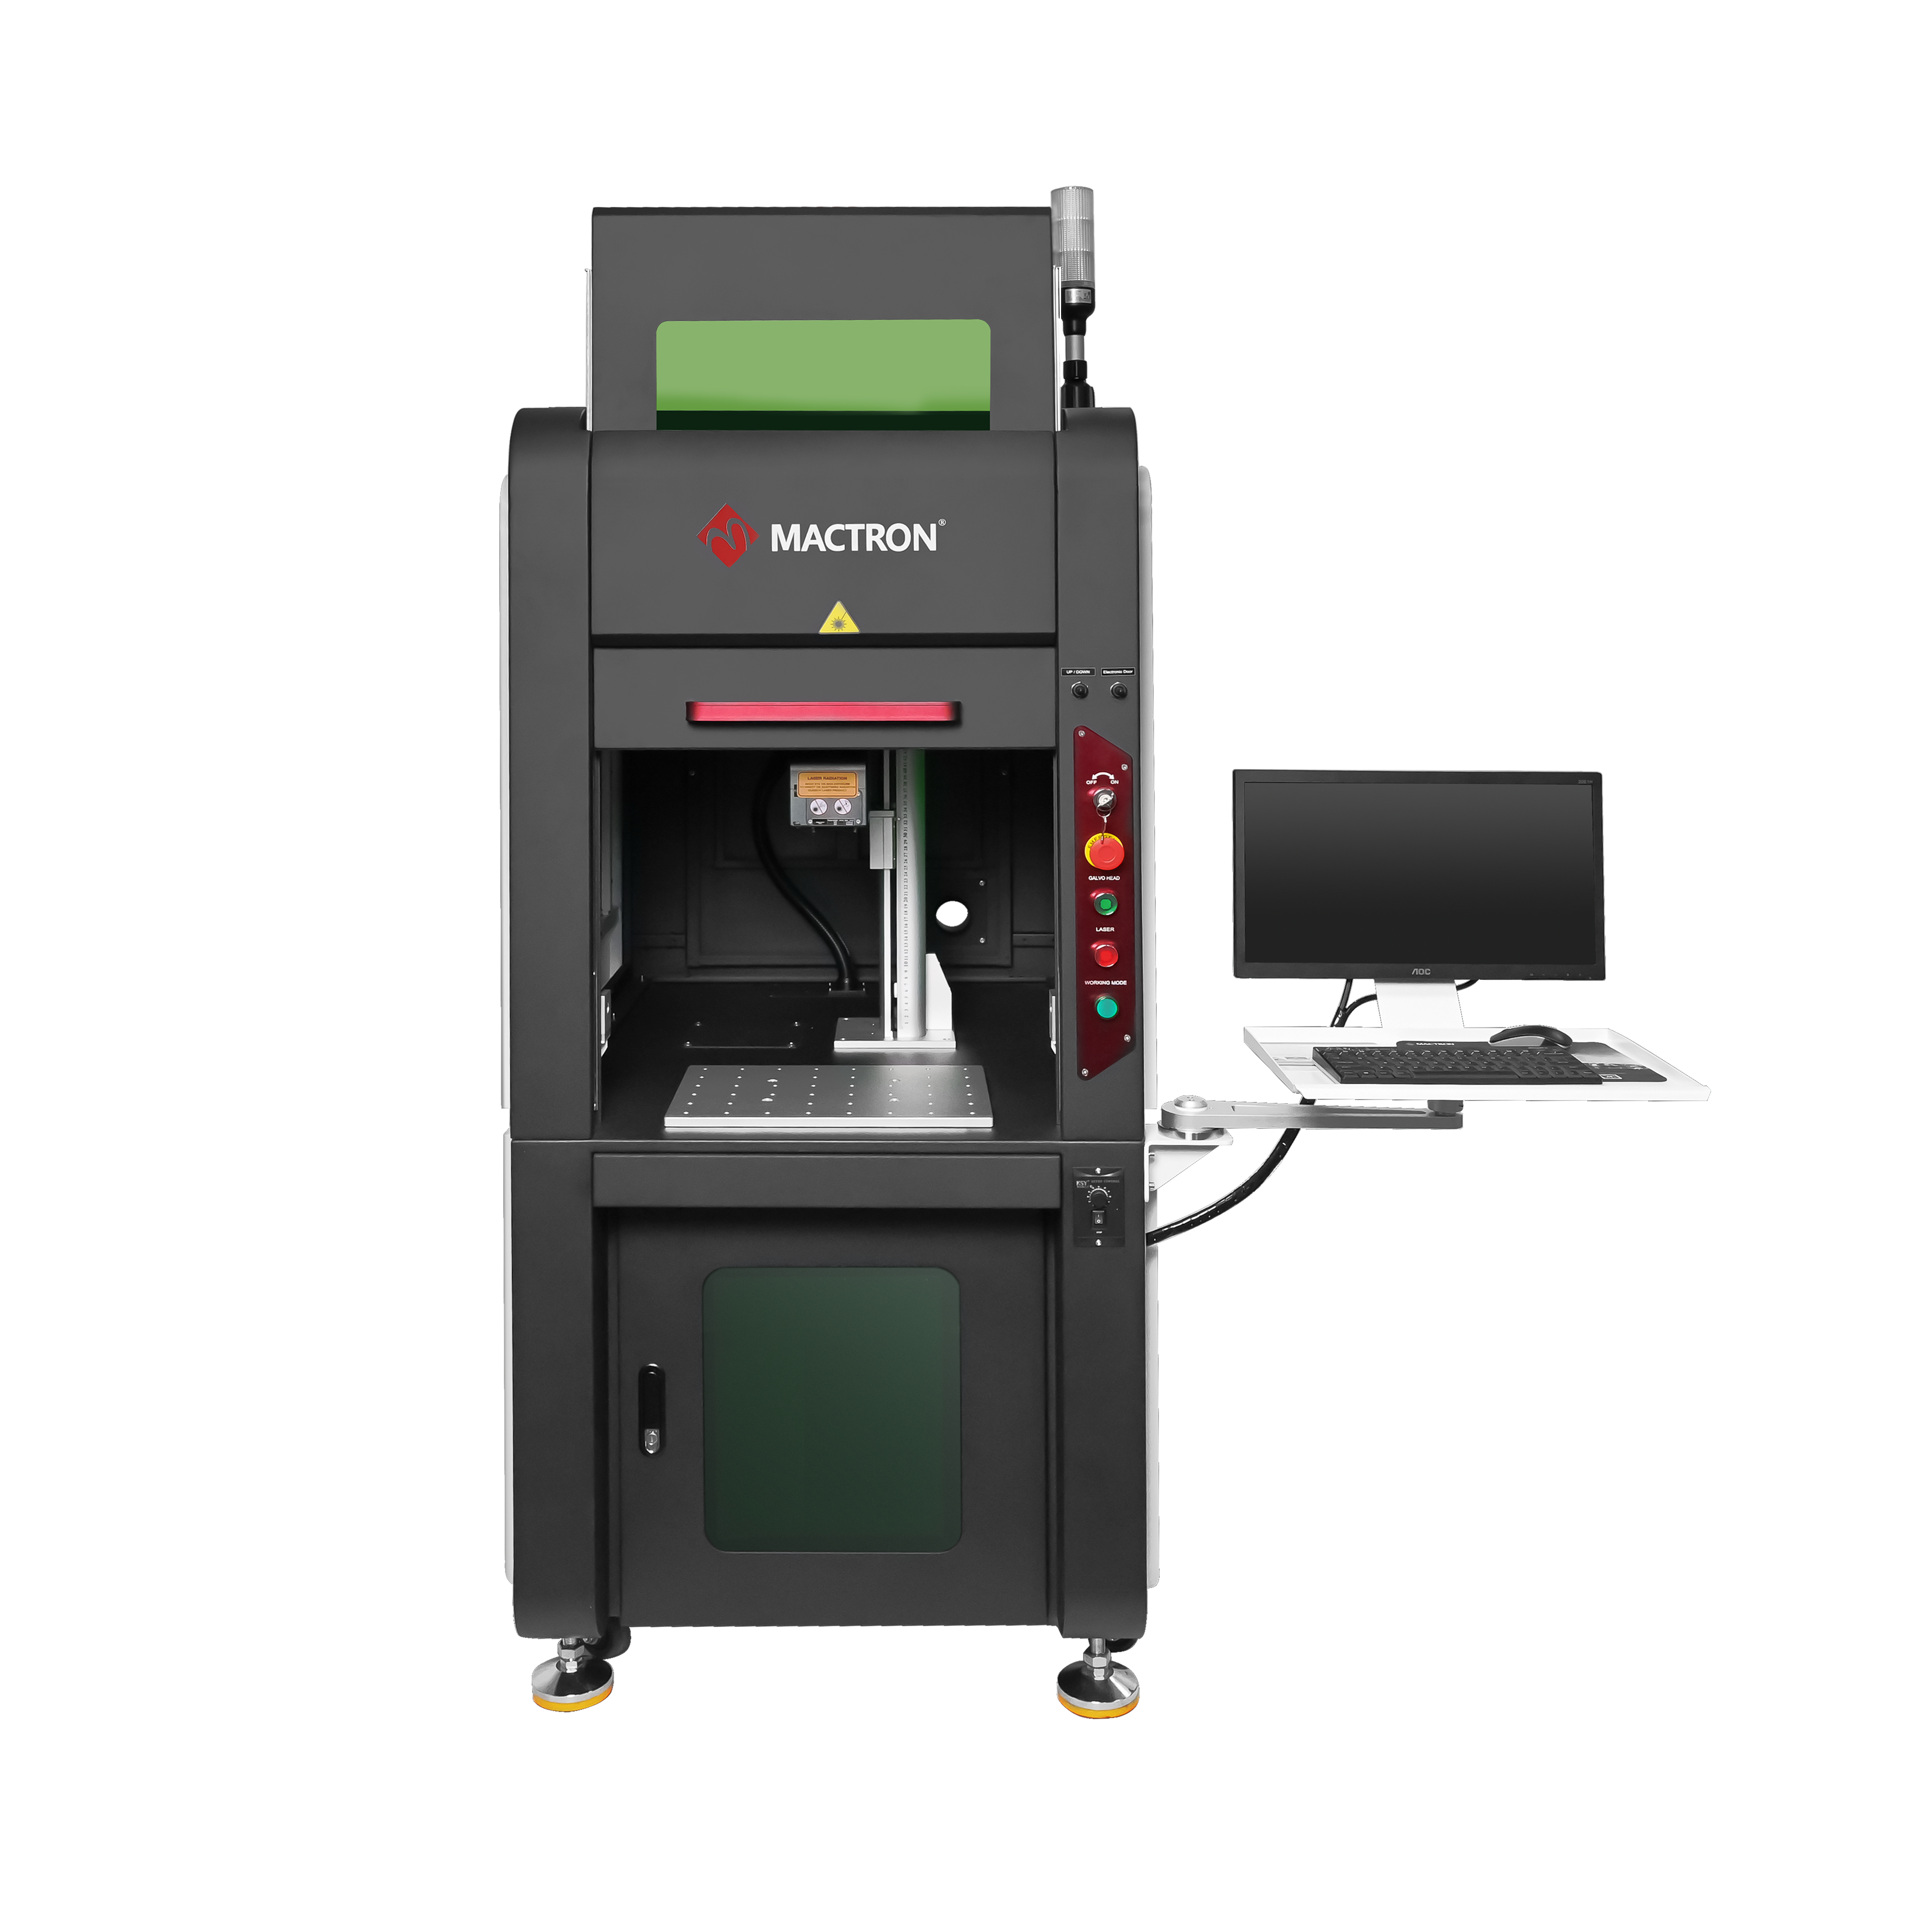 Machine de gravure laser 3D avec couverture fermée de sécurité